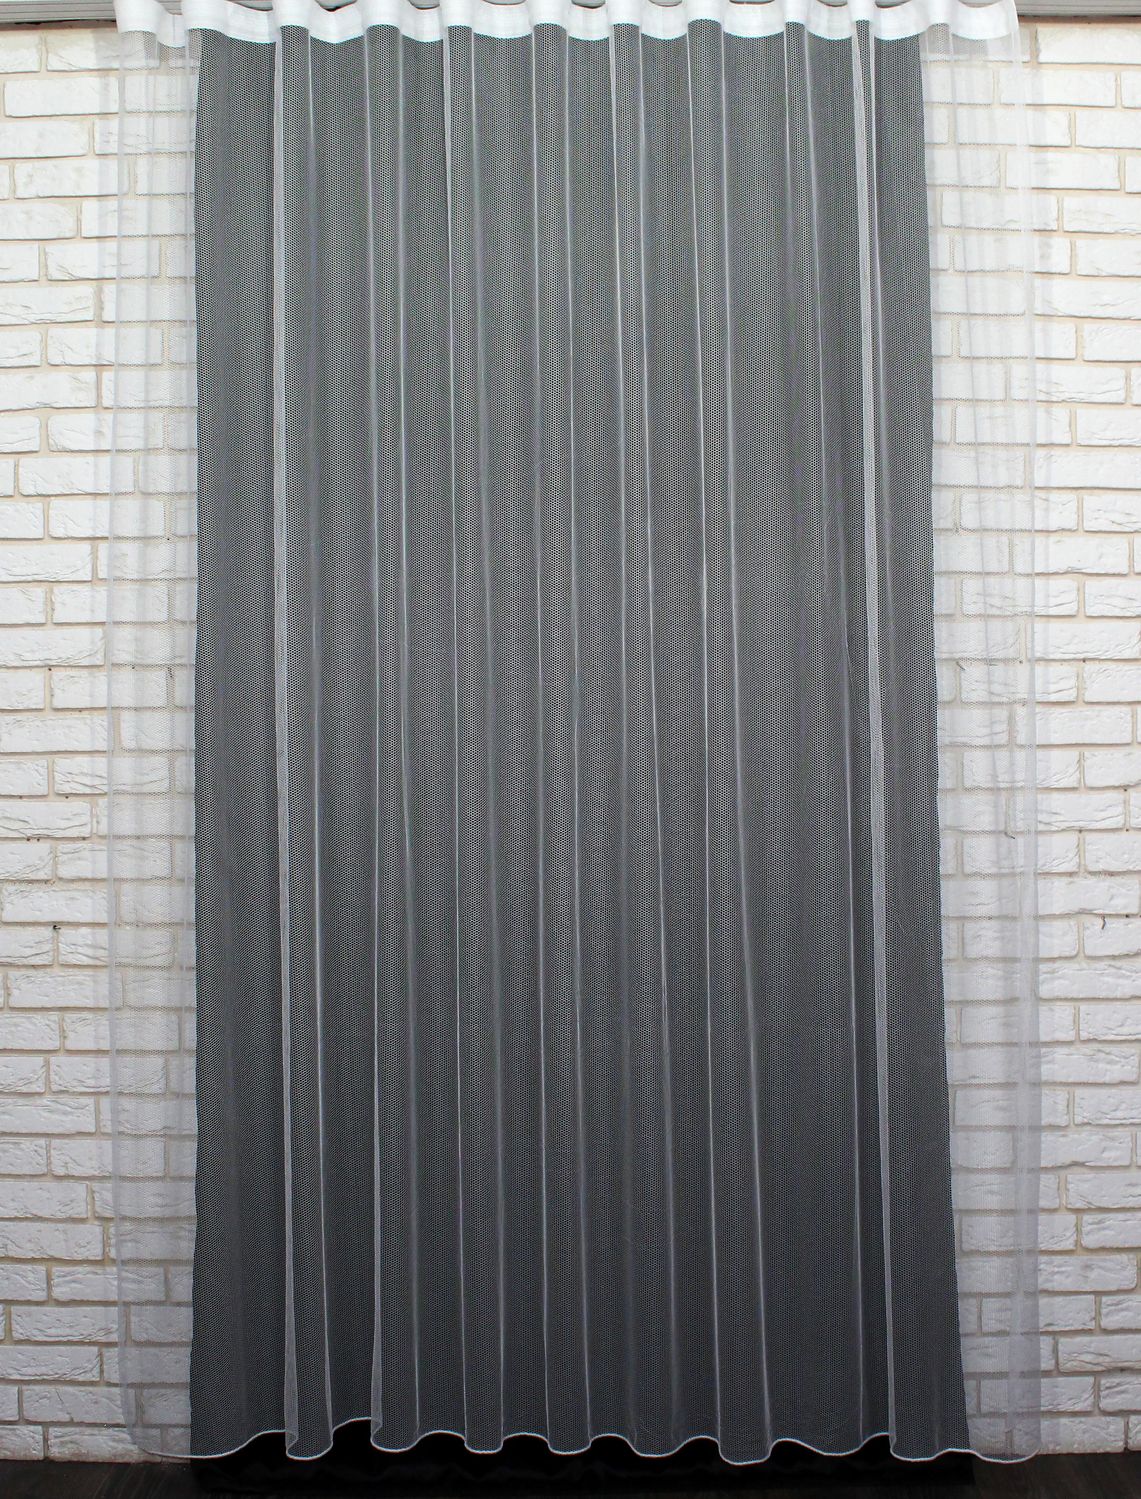 Тюль грек-сетка однотонная, коллекция "Грек Соты", высотой 3м цвет белый 957т, Тюль на метраж, Нужную Вам ширину указывайте при покупке. (Ширина набирается по длине рулона.), 3 м.